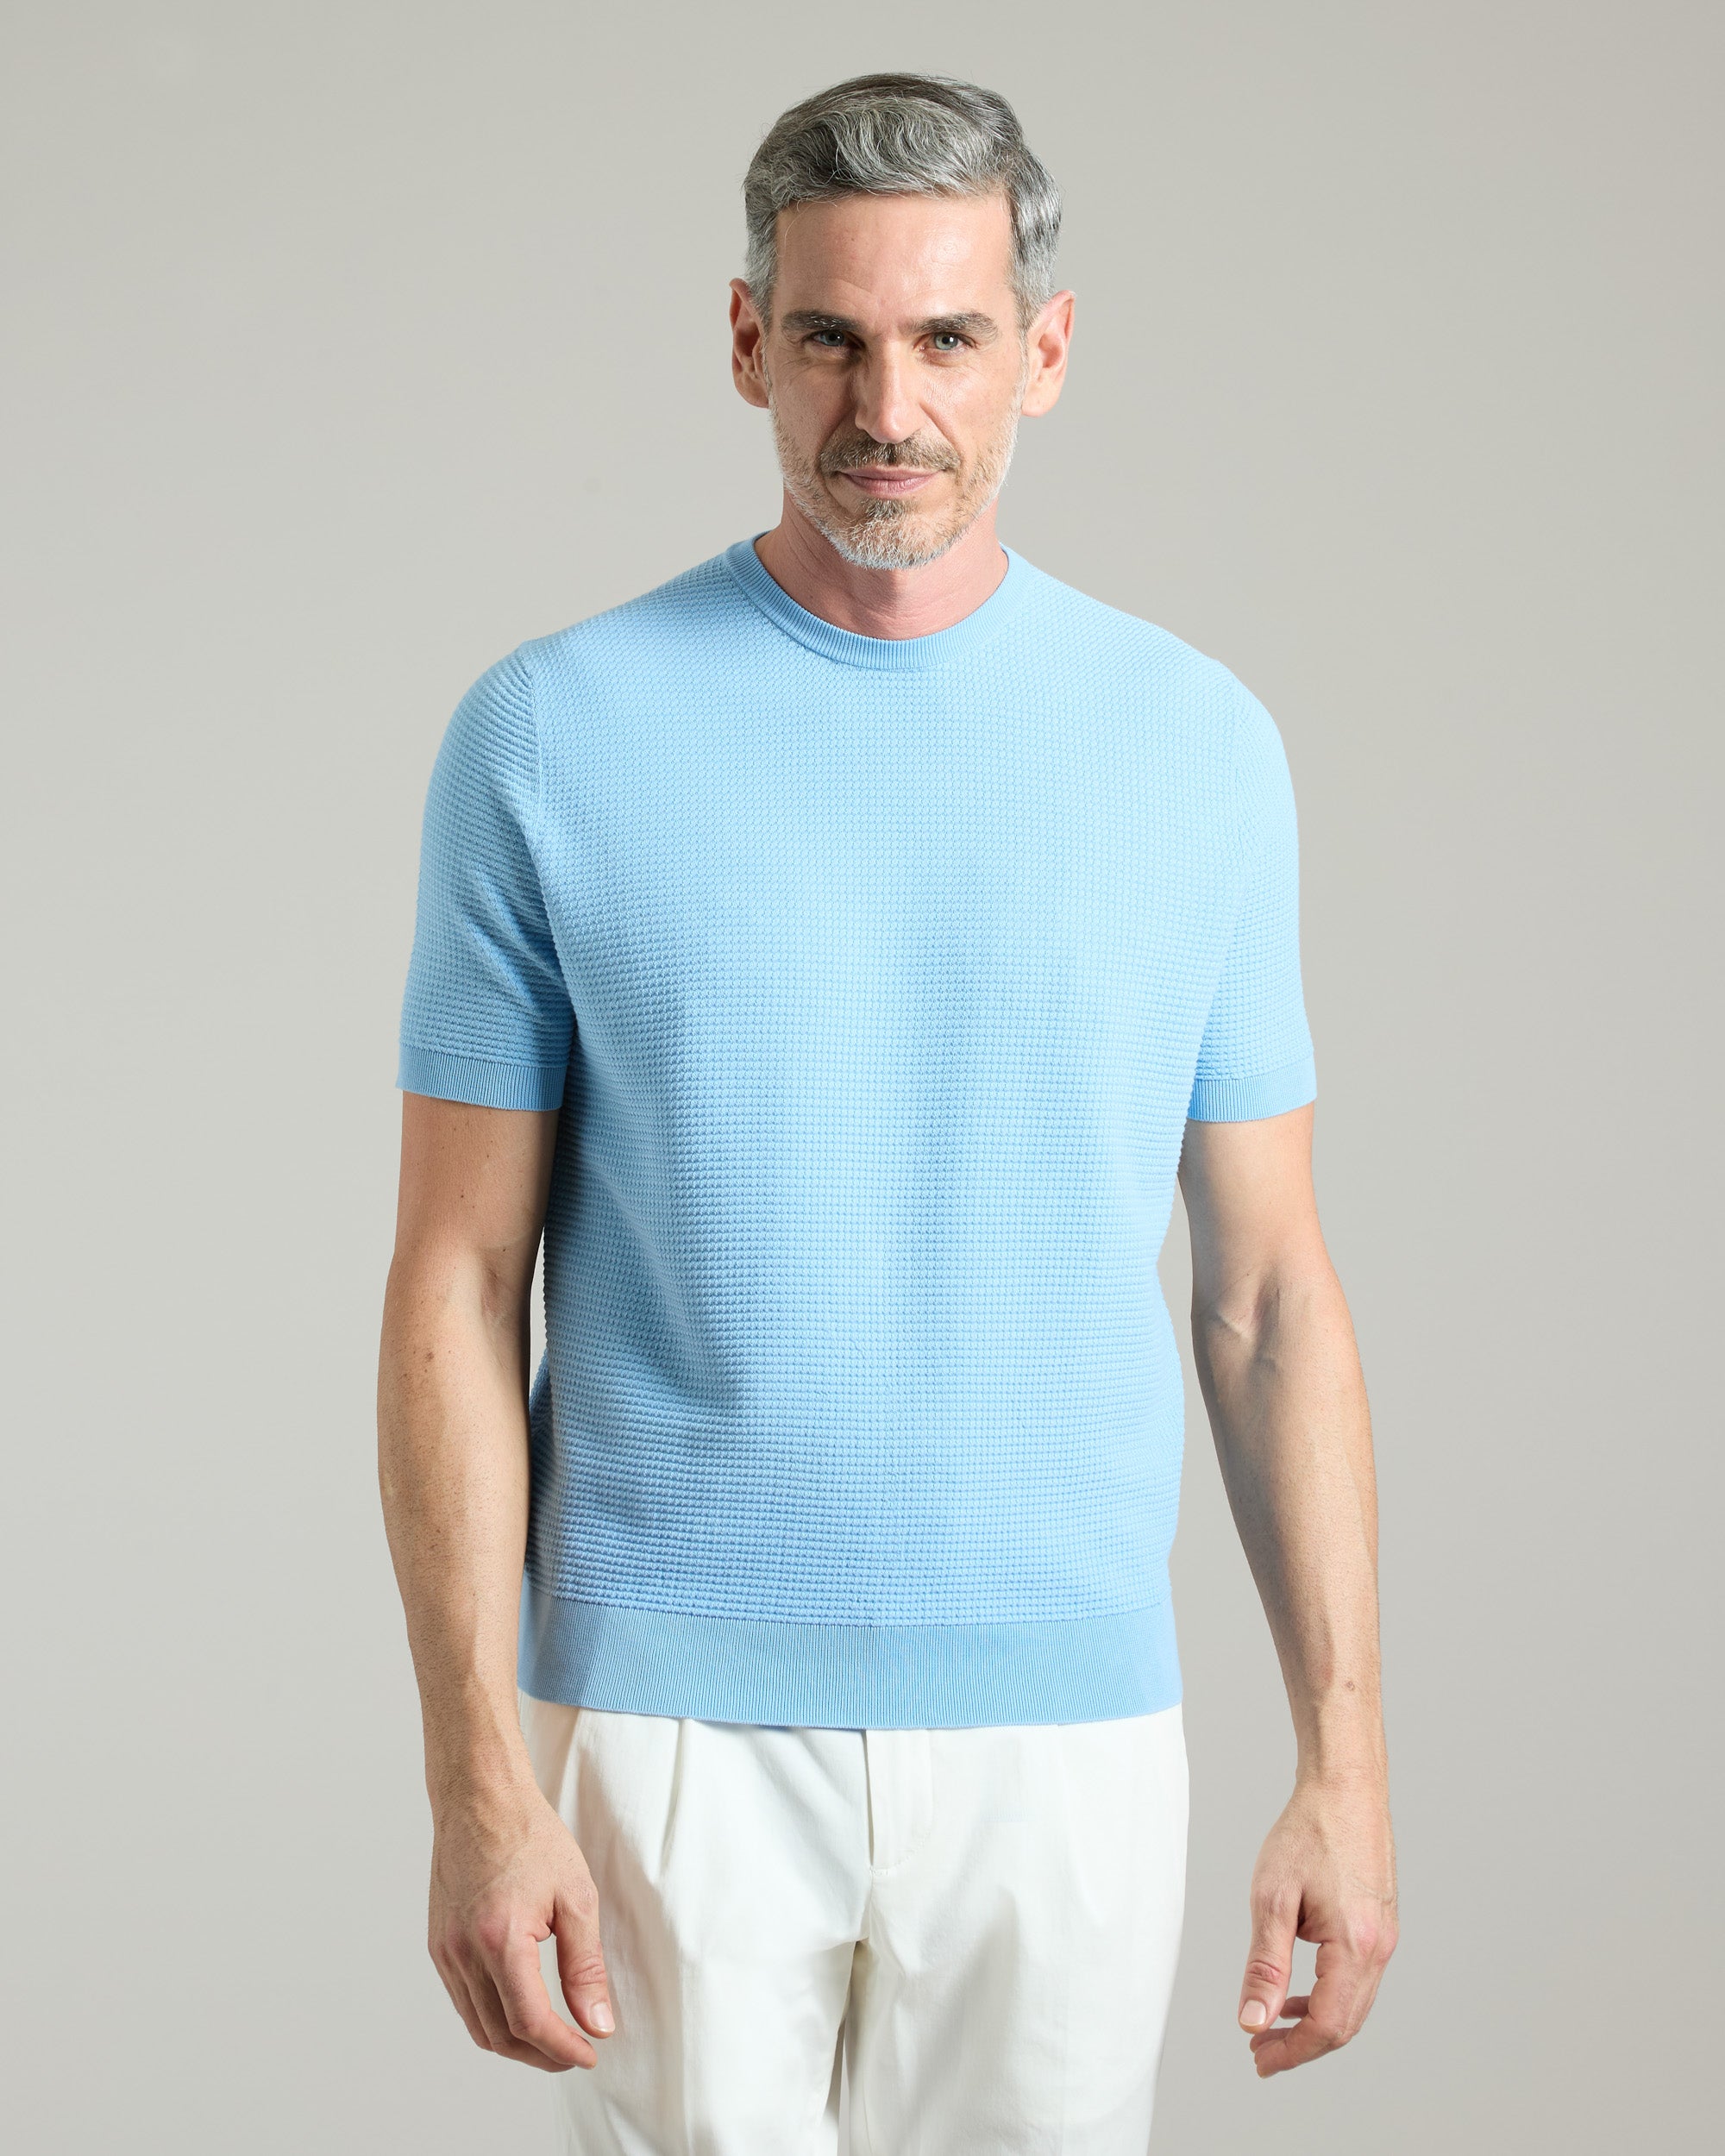 Hellblaues T-Shirt aus Baumwolle mit Mikrostich